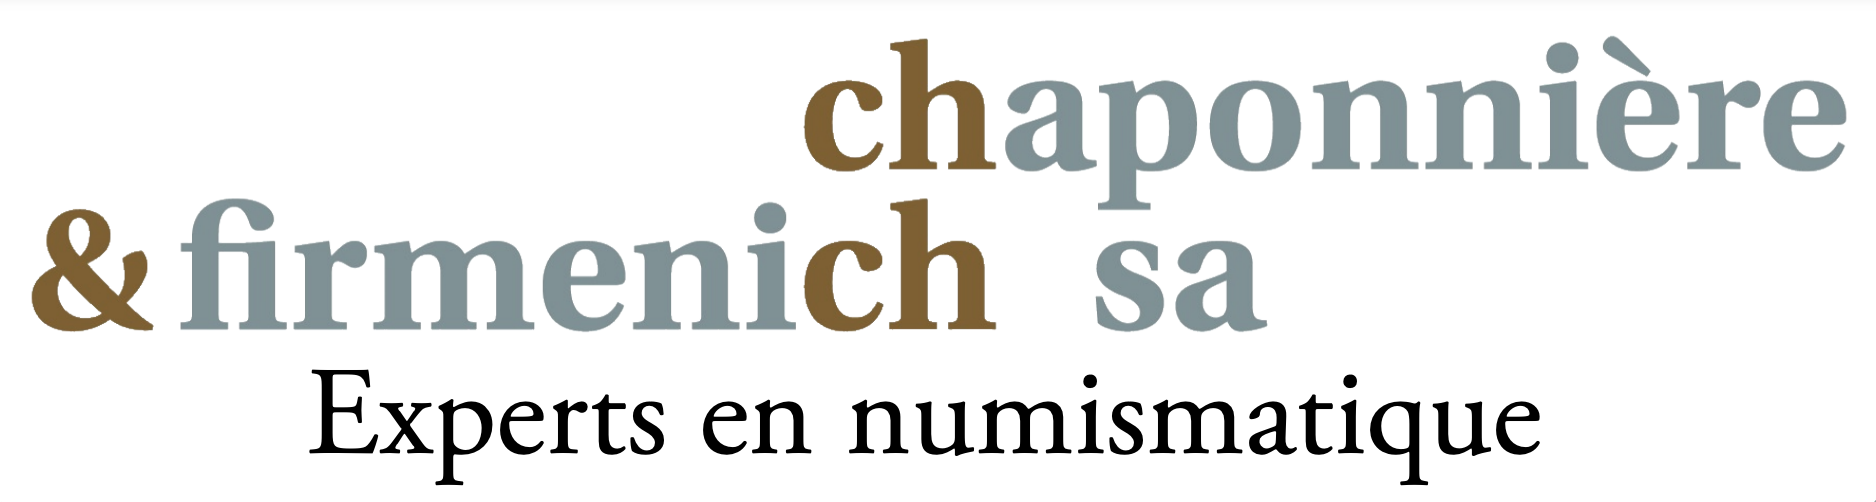 Chaponniere & Firmenich